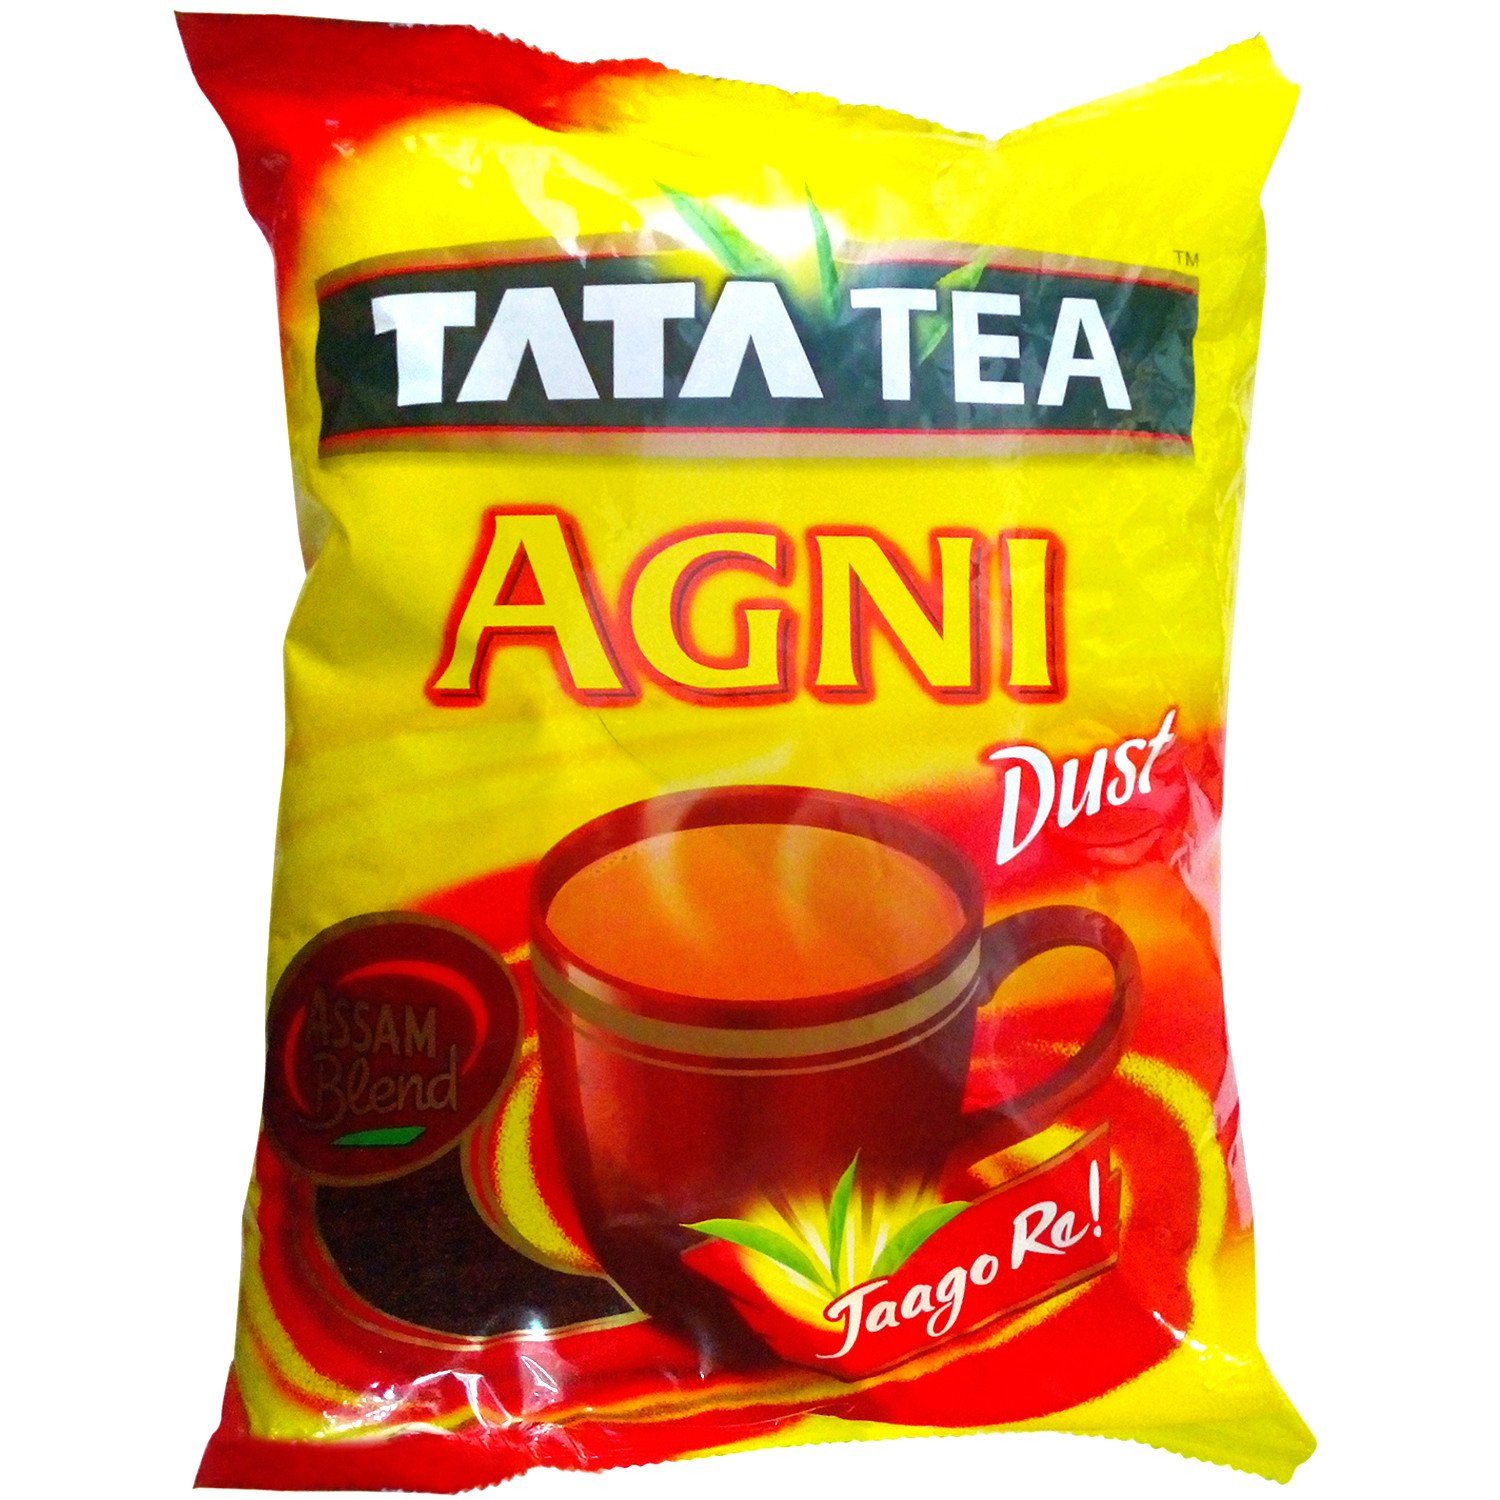 Tata Agni Tea Powder Dust Image